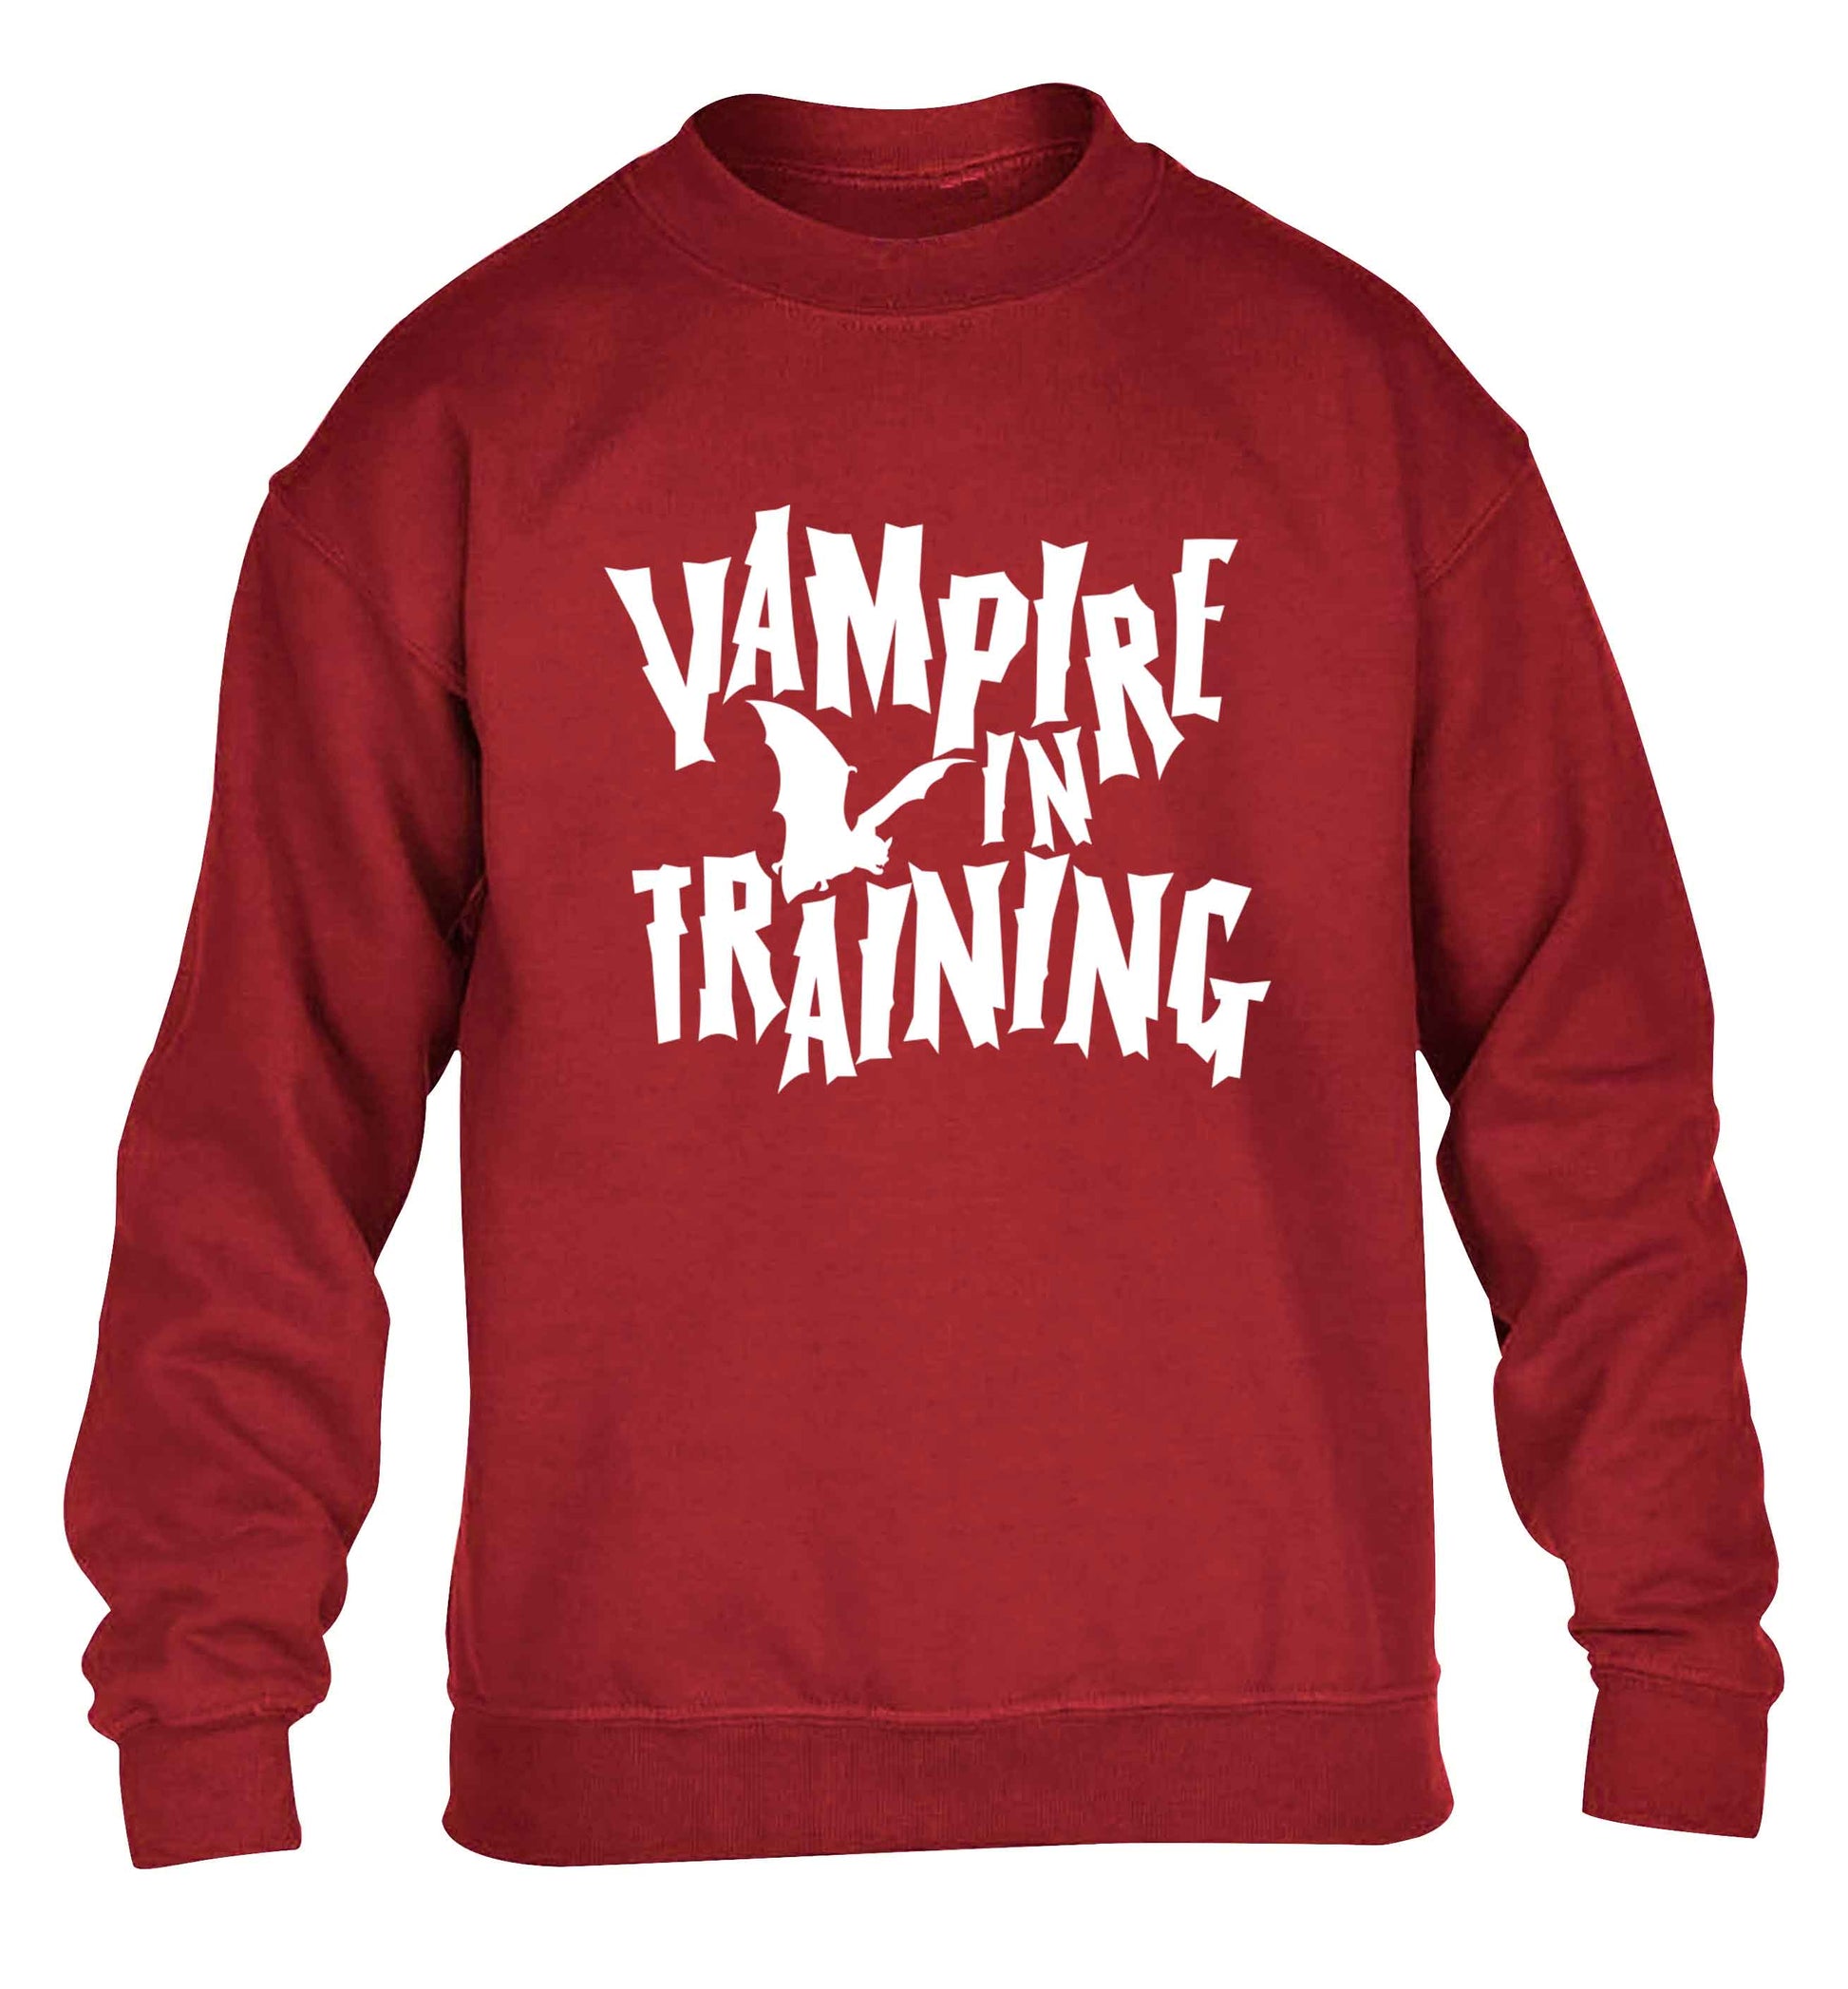 Vampire in training children's grey sweater 12-13 Years